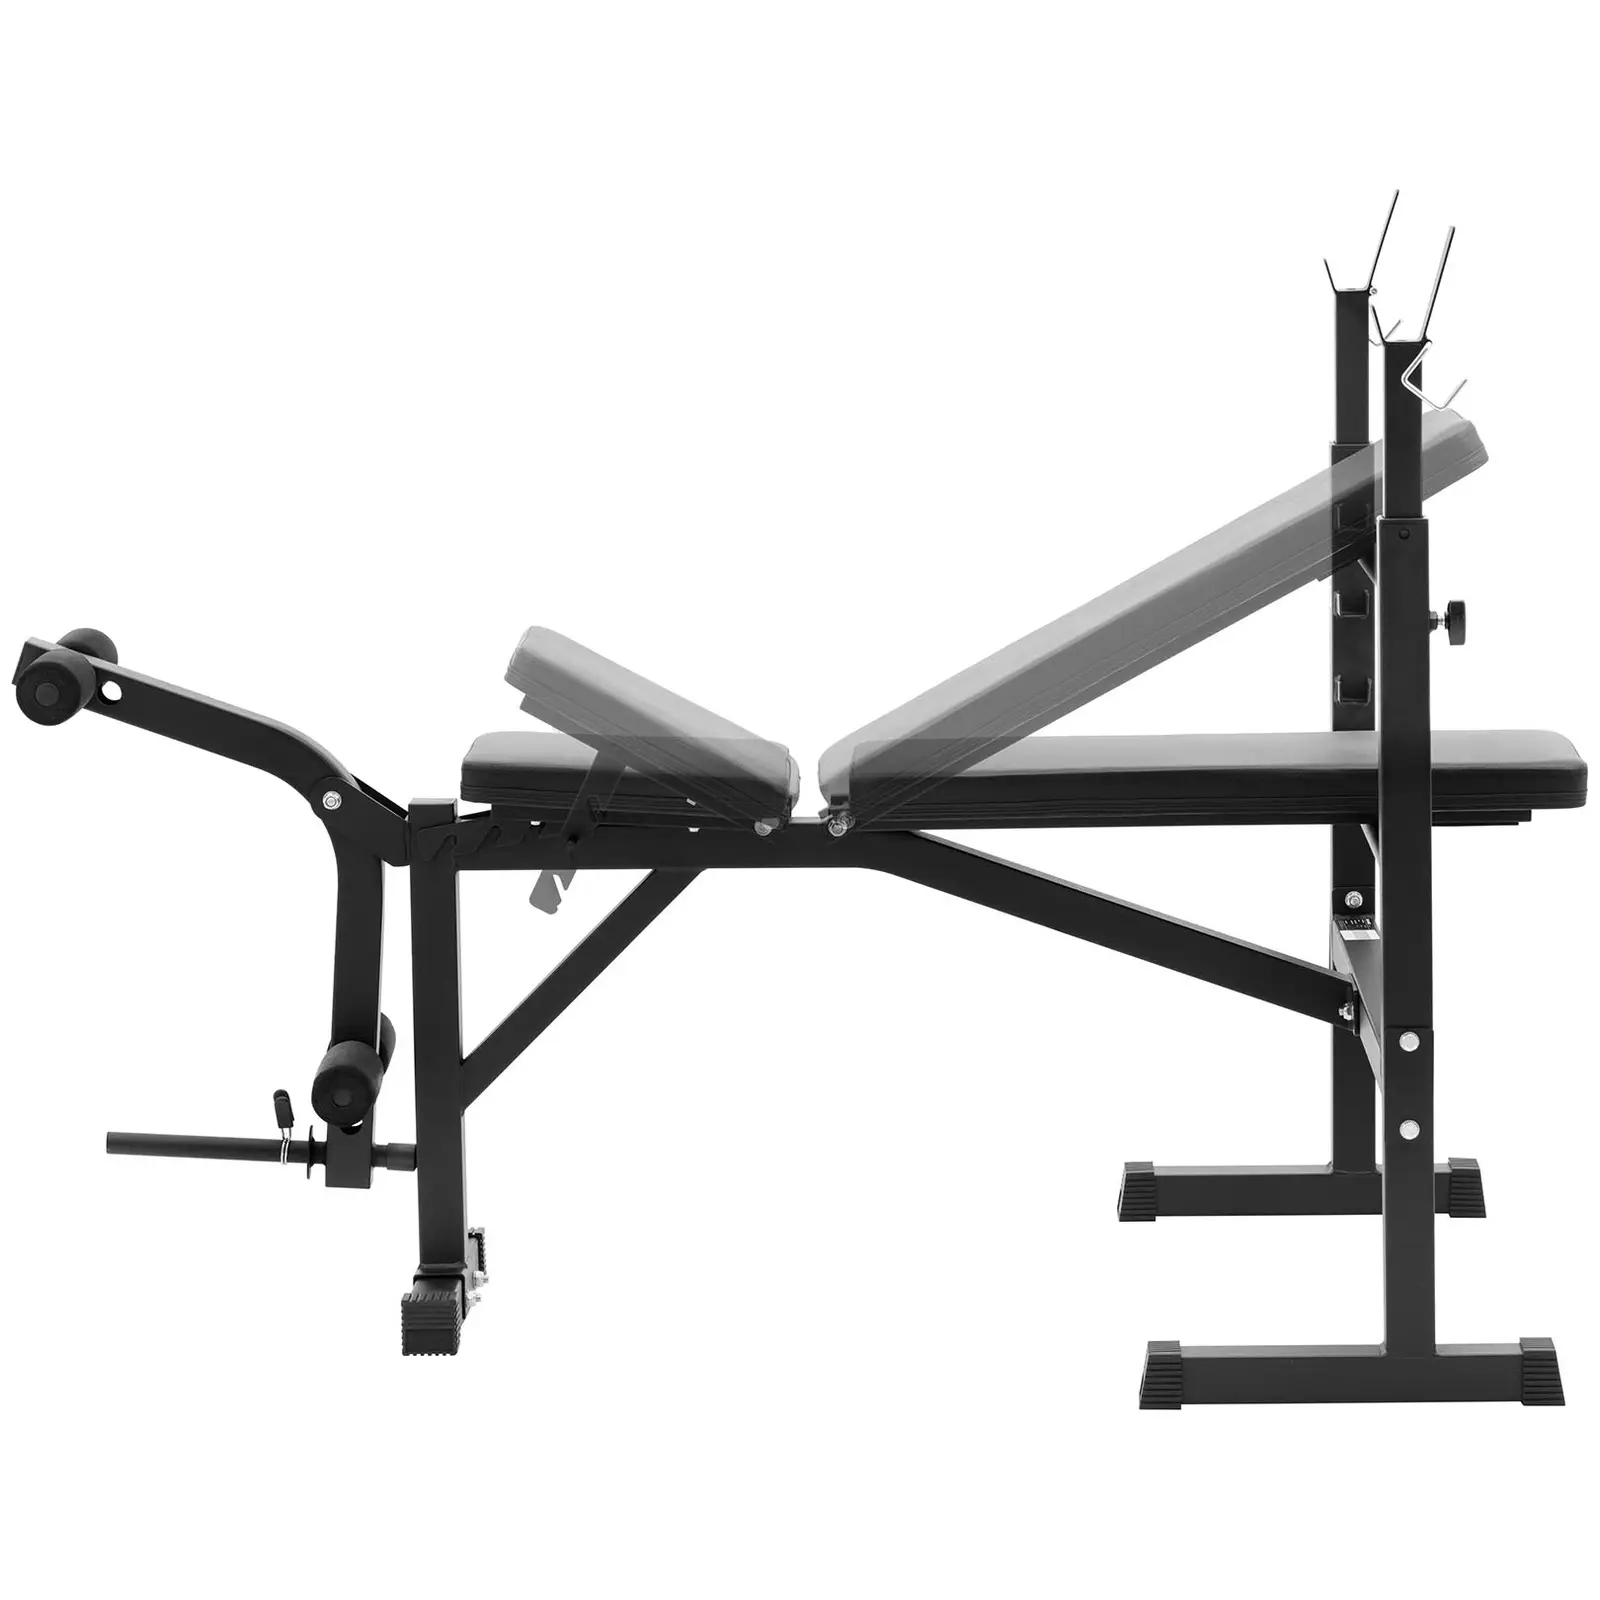 Multifunktionell träningsbänk - belastbar upp till 100 kg - justerbar - 180 - 152° lutning